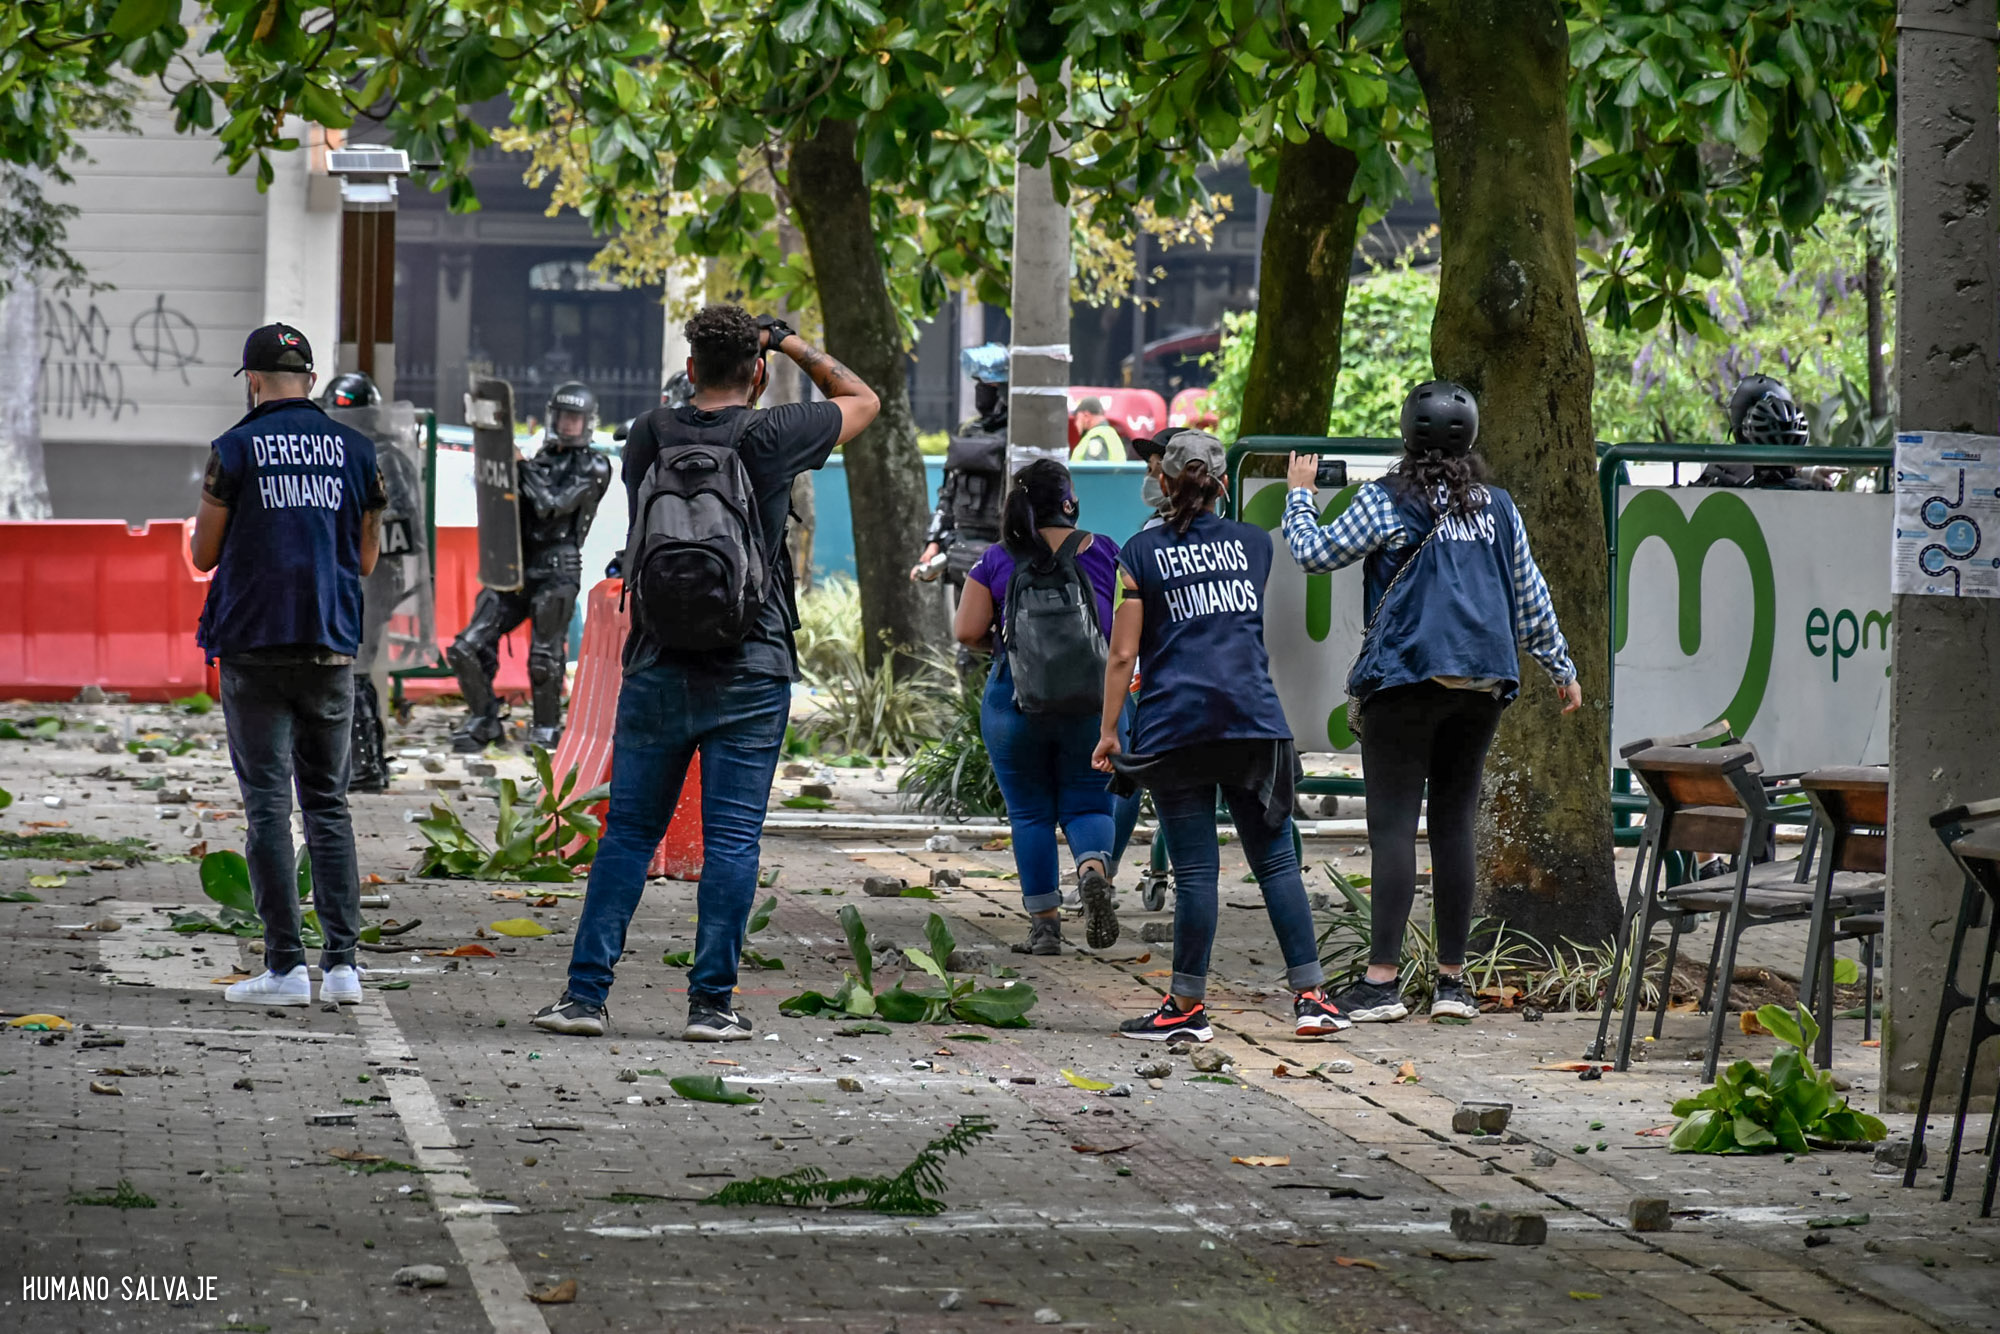 Defensores de Derechos Humanos attempt to engage police in Medellín, Colombia on April 28, 2021.